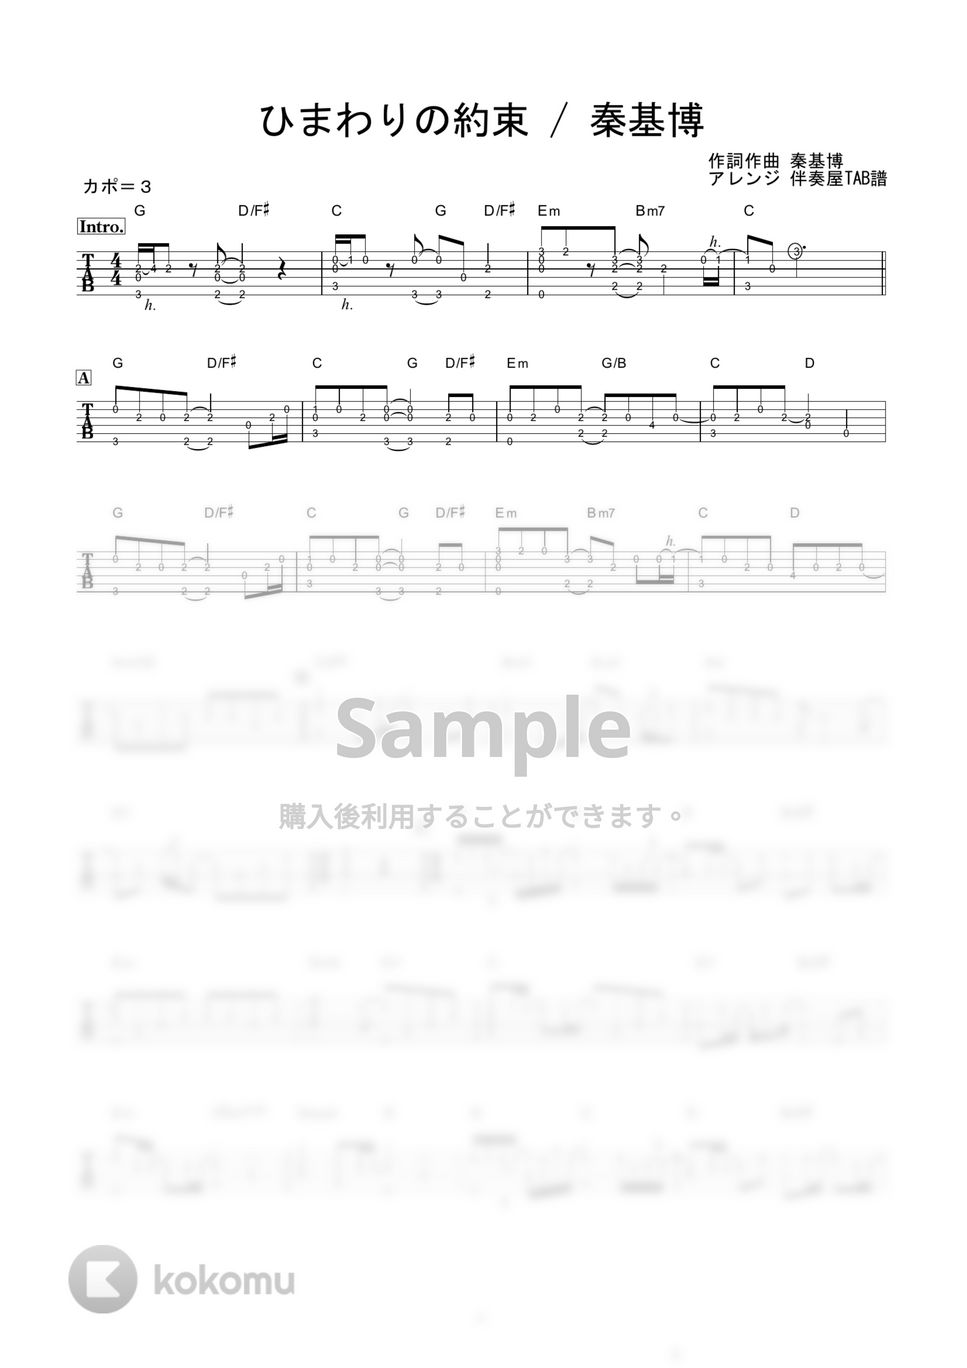 秦基博 - ひまわりの約束 (かんたんソロギター) by 伴奏屋TAB譜